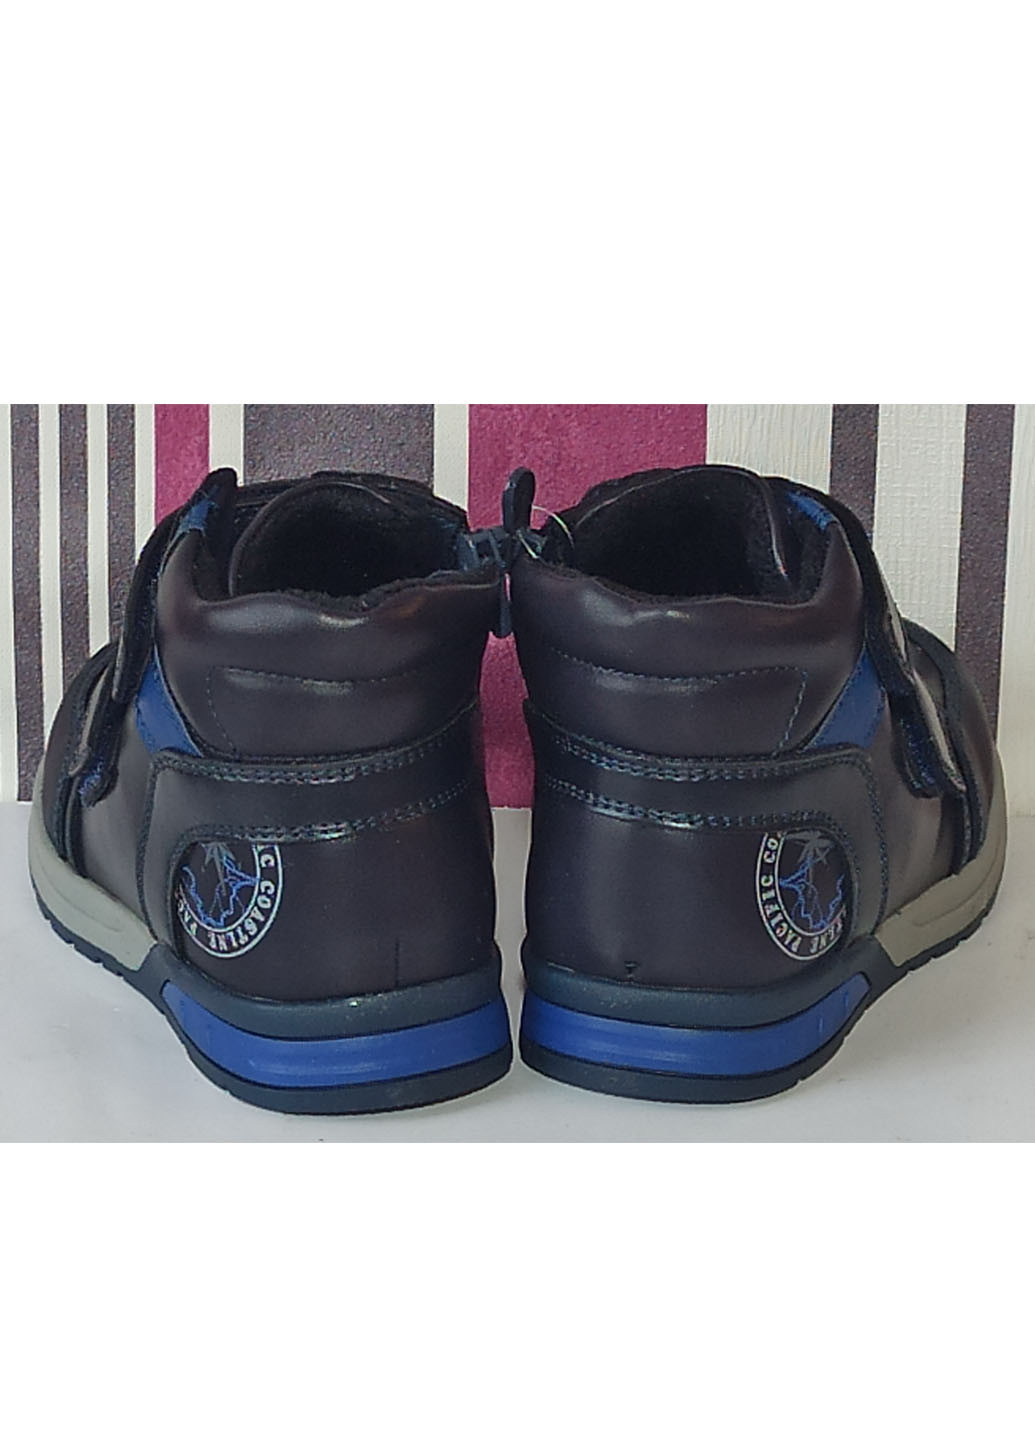 Темно-синие повседневные осенние детские демисезонные ботинки для мальчика утепленные на флисе 5602 21-13,5см 23-15см 25-16см Сказка